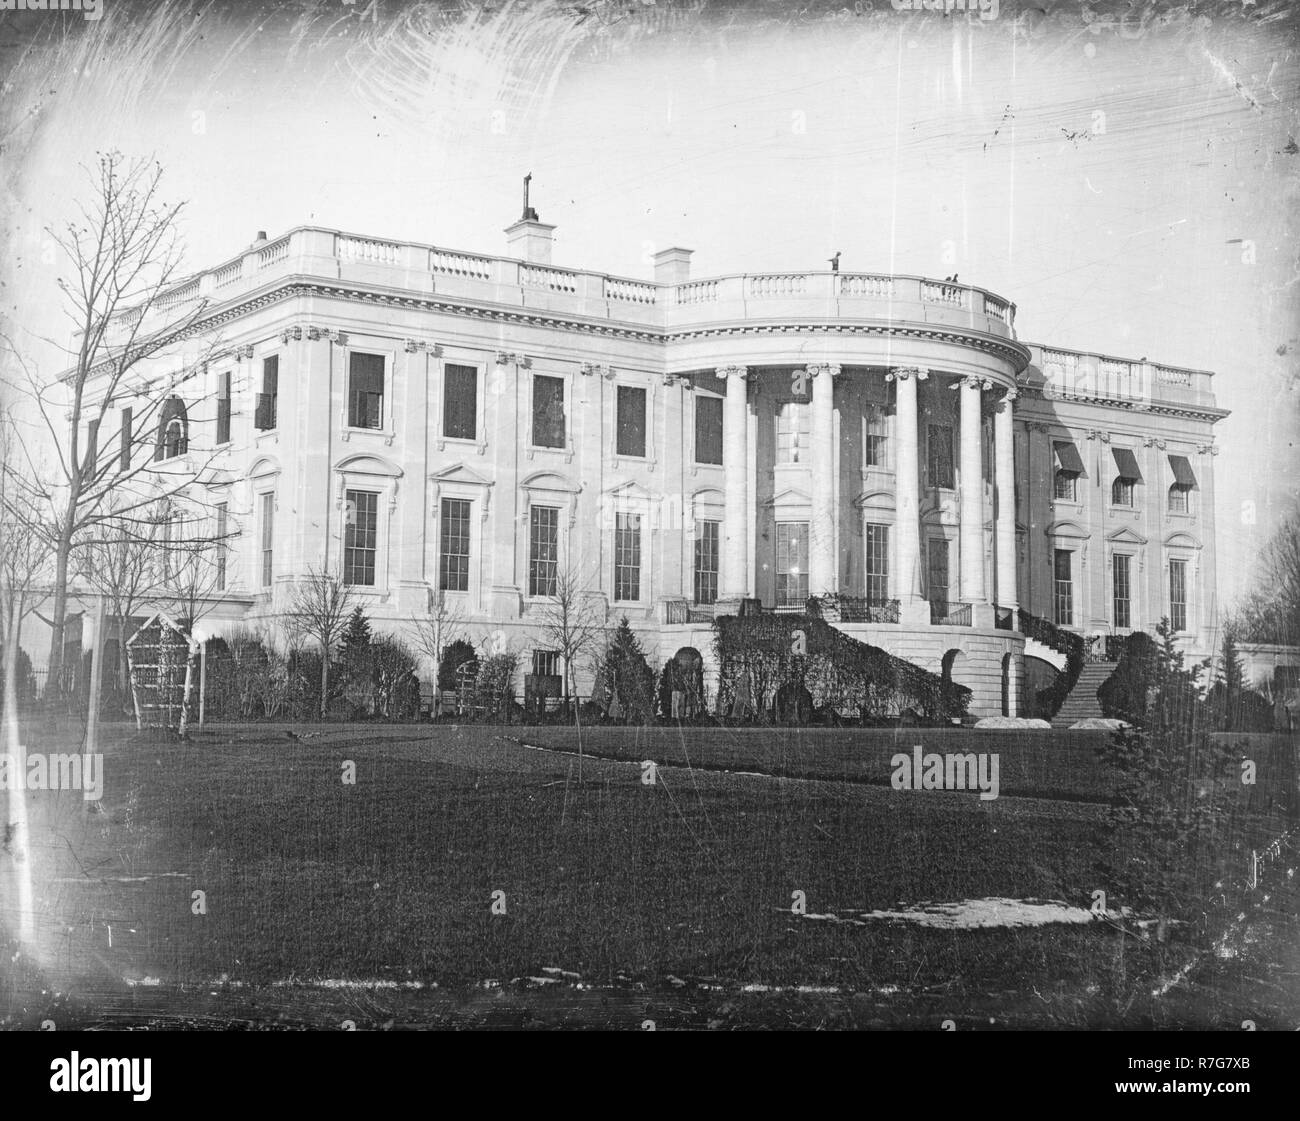 Presidente del Parlamento - la Casa Bianca , Washington, che mostra il lato sud, probabilmente preso in inverno come un piatto di mezzo daguerreotype. Circa 1846. Fotografia di John Plumbe, 1809-1857. Foto Stock